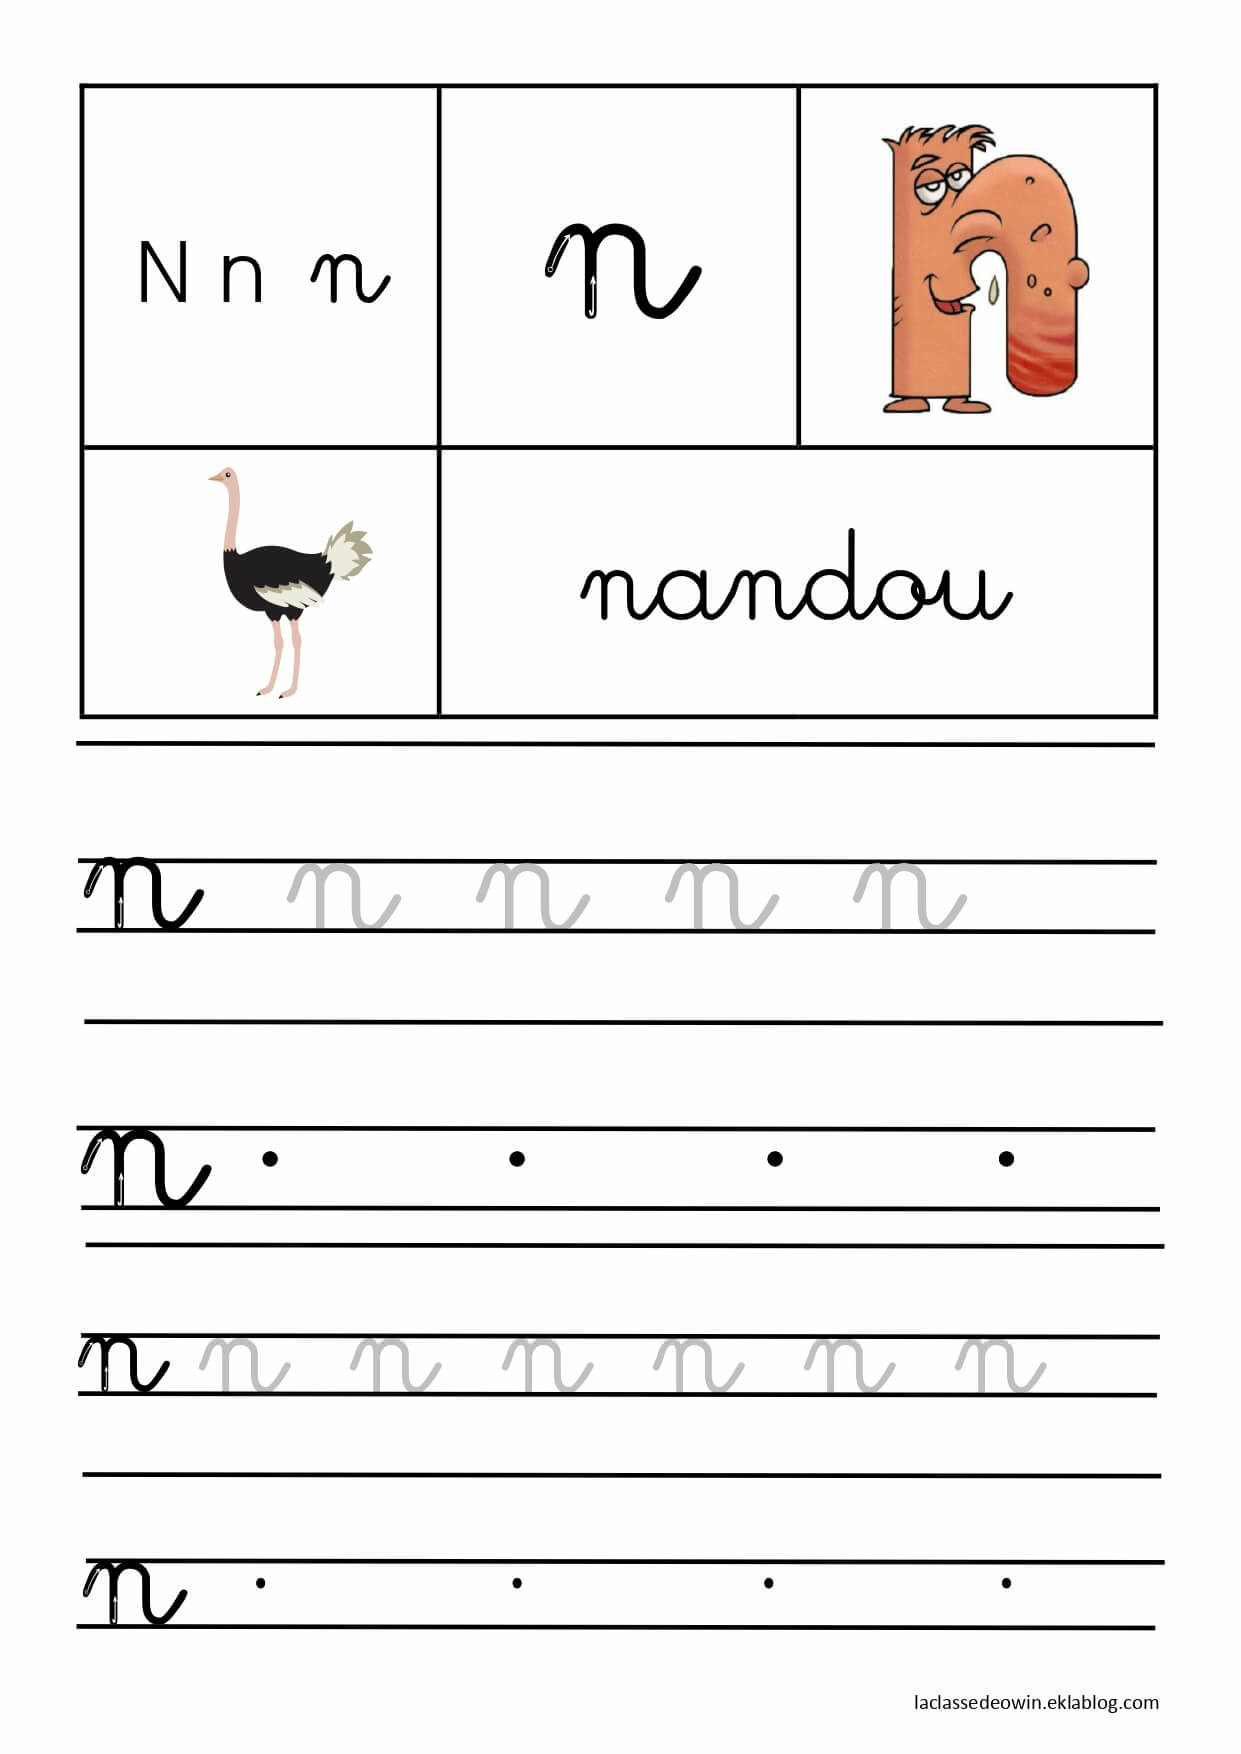   Lettre N pour nandou, écriture cursive GS 